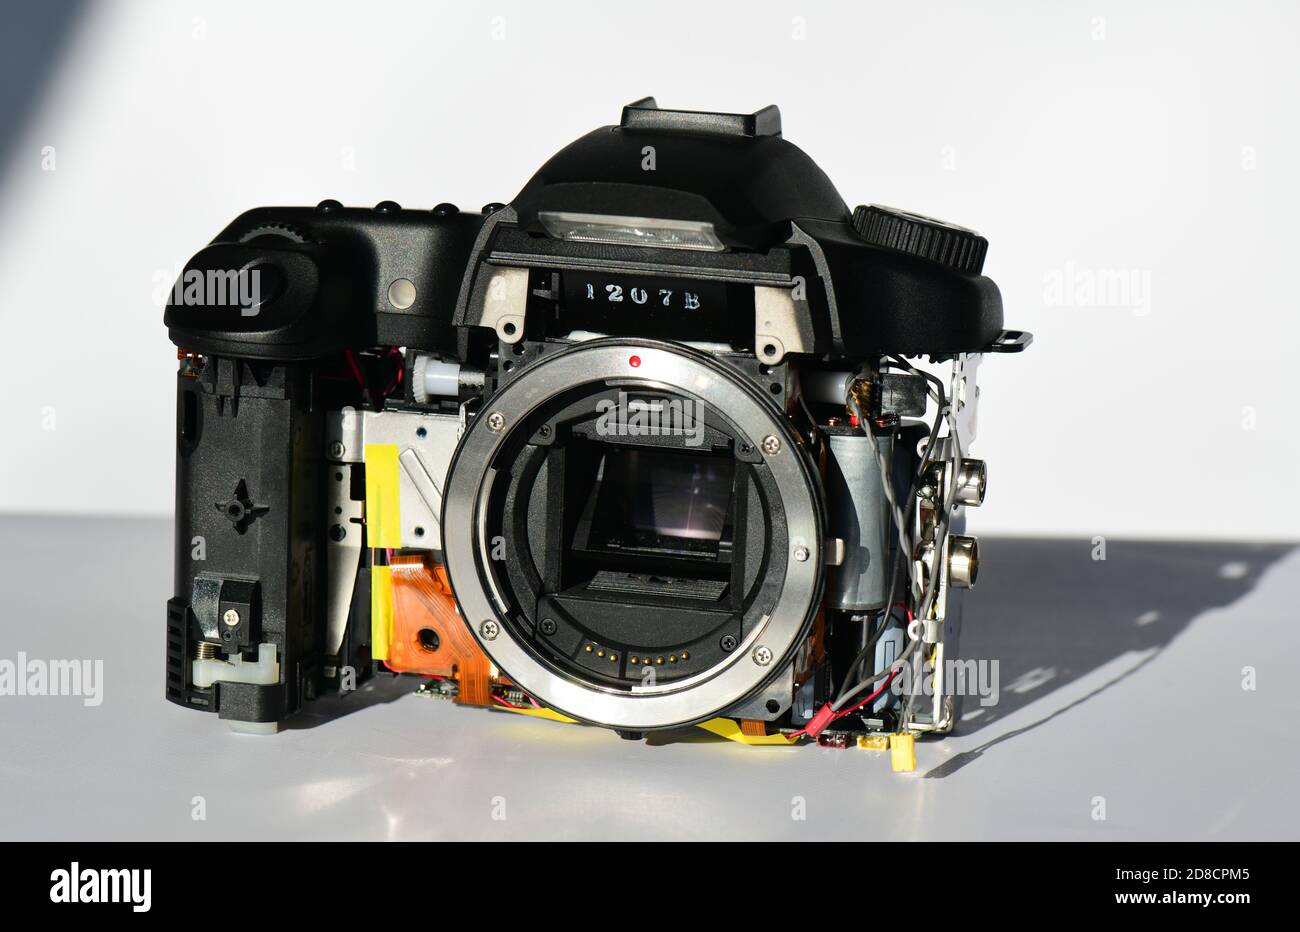 caméra numérique montrant le capteur ccd d'image ( dispositif couplé chargé ) Banque D'Images